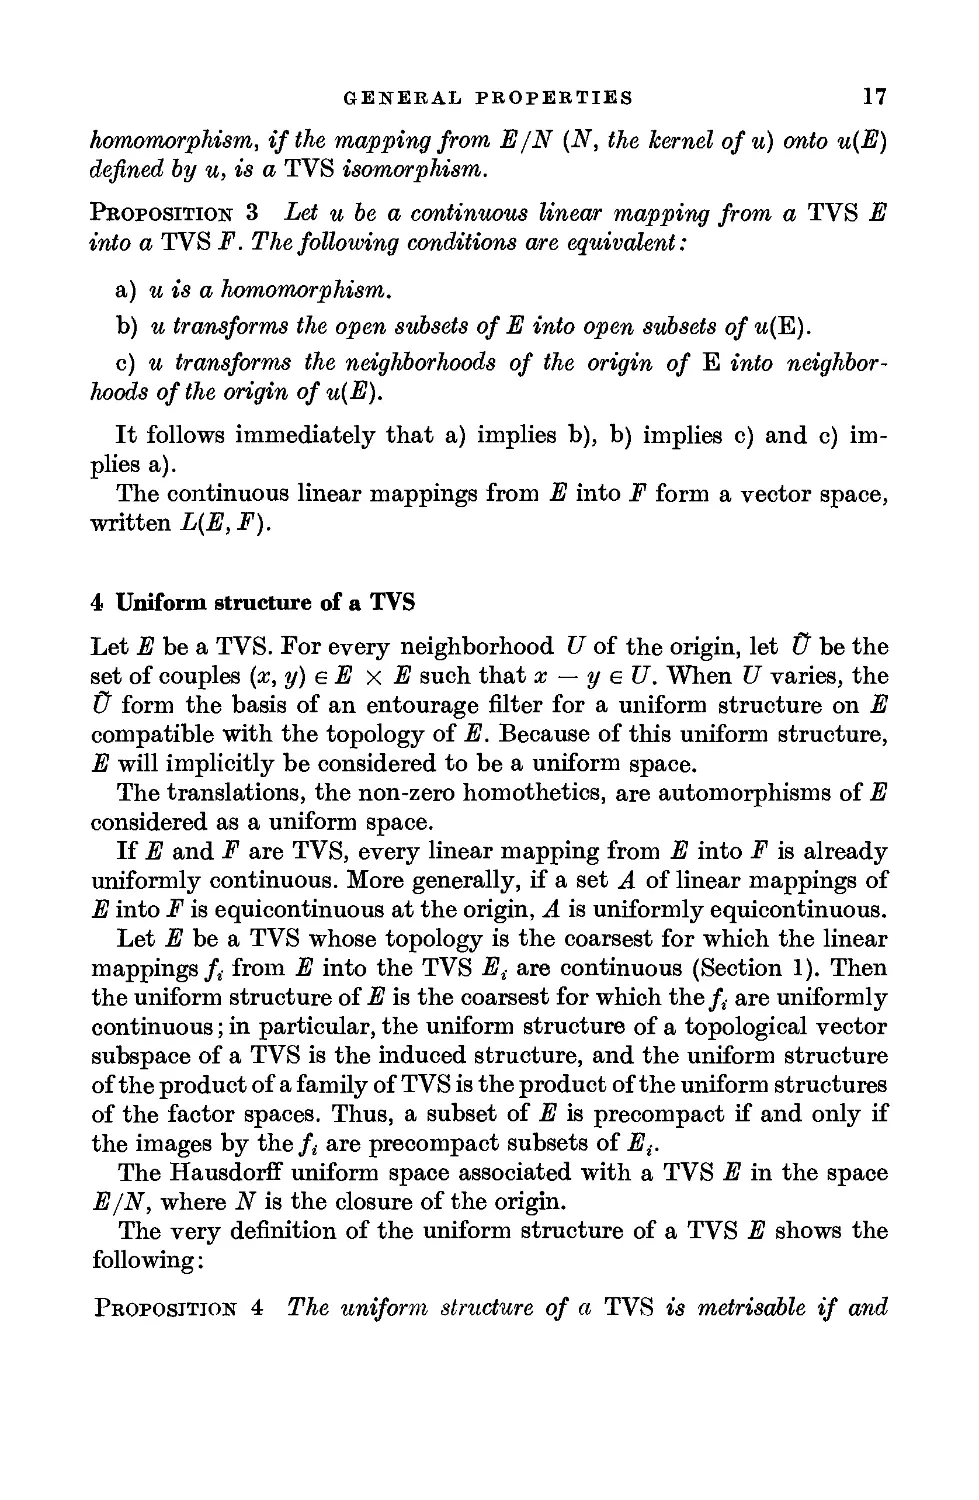 4. Uniform structure of a TVS